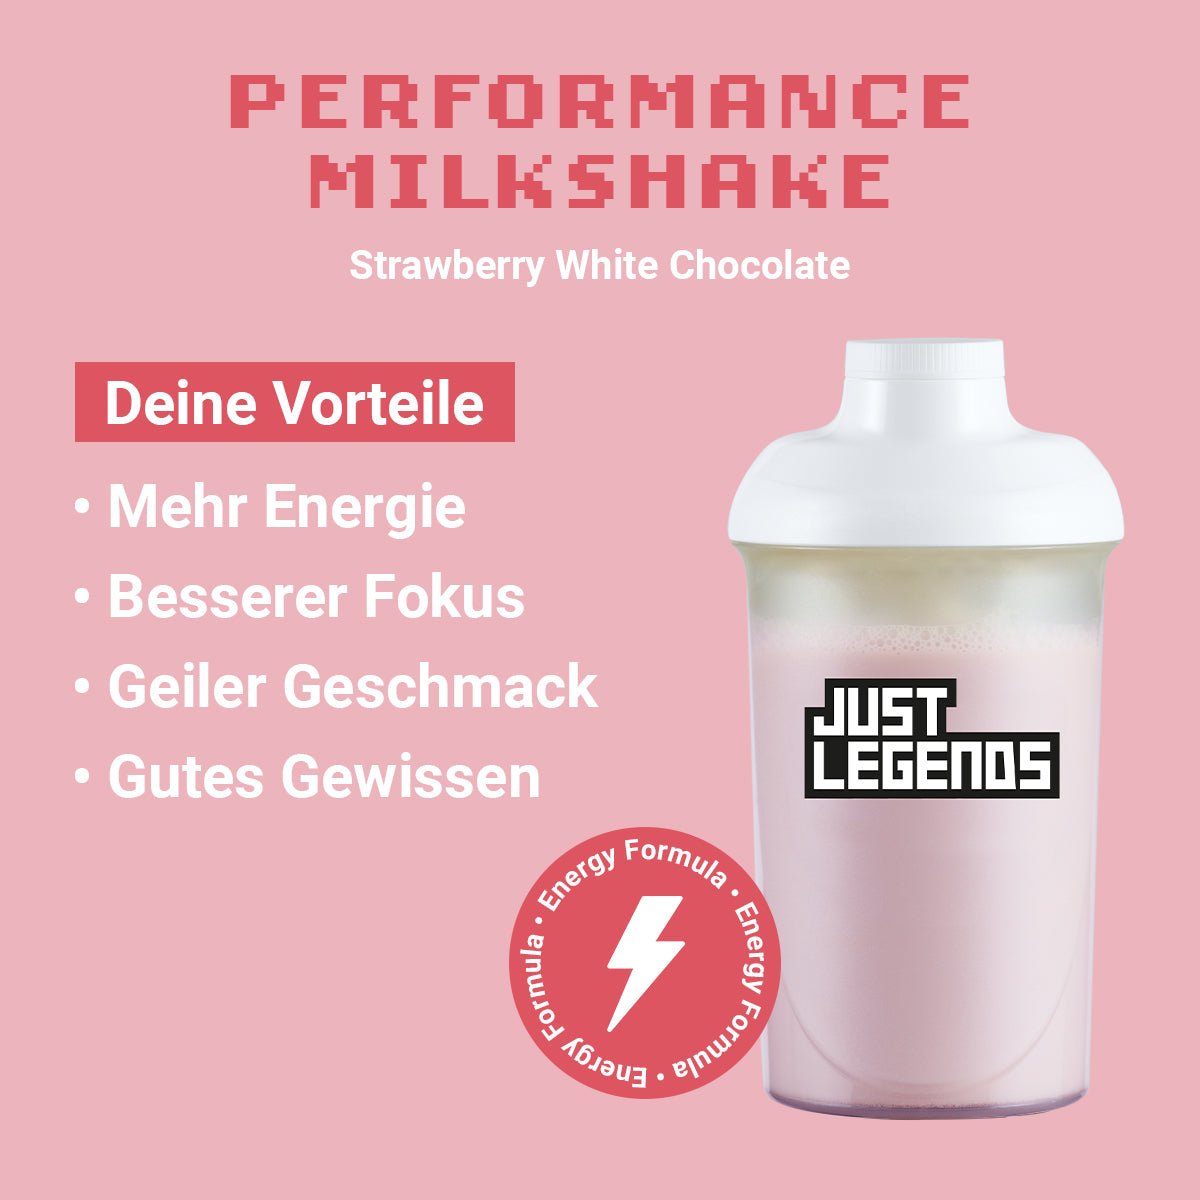 Just Legends Performance Milkshake Strawberry White Chocolate | Funktionaler, veganer Performance Milkshake auf Pulverbasis ohne Zucker, mit wenig Kalorien, vielen Vitaminen und natürlichen Aromen.